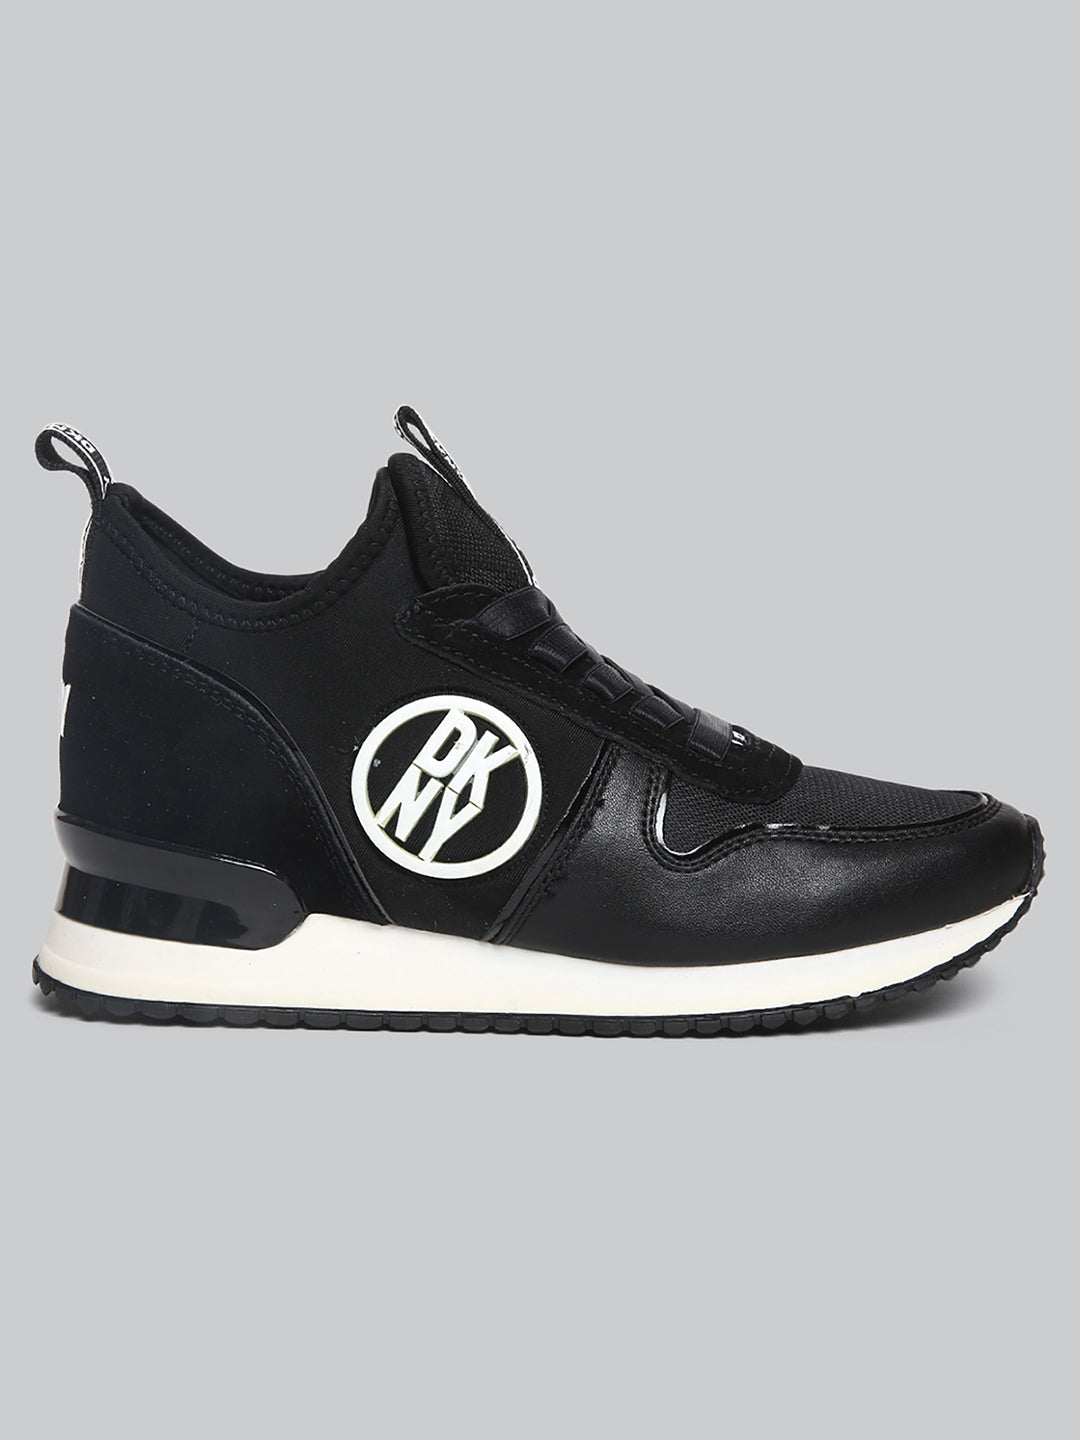 Women's Louis Vuitton Sneakers Athletic Shoes Black Sx 37